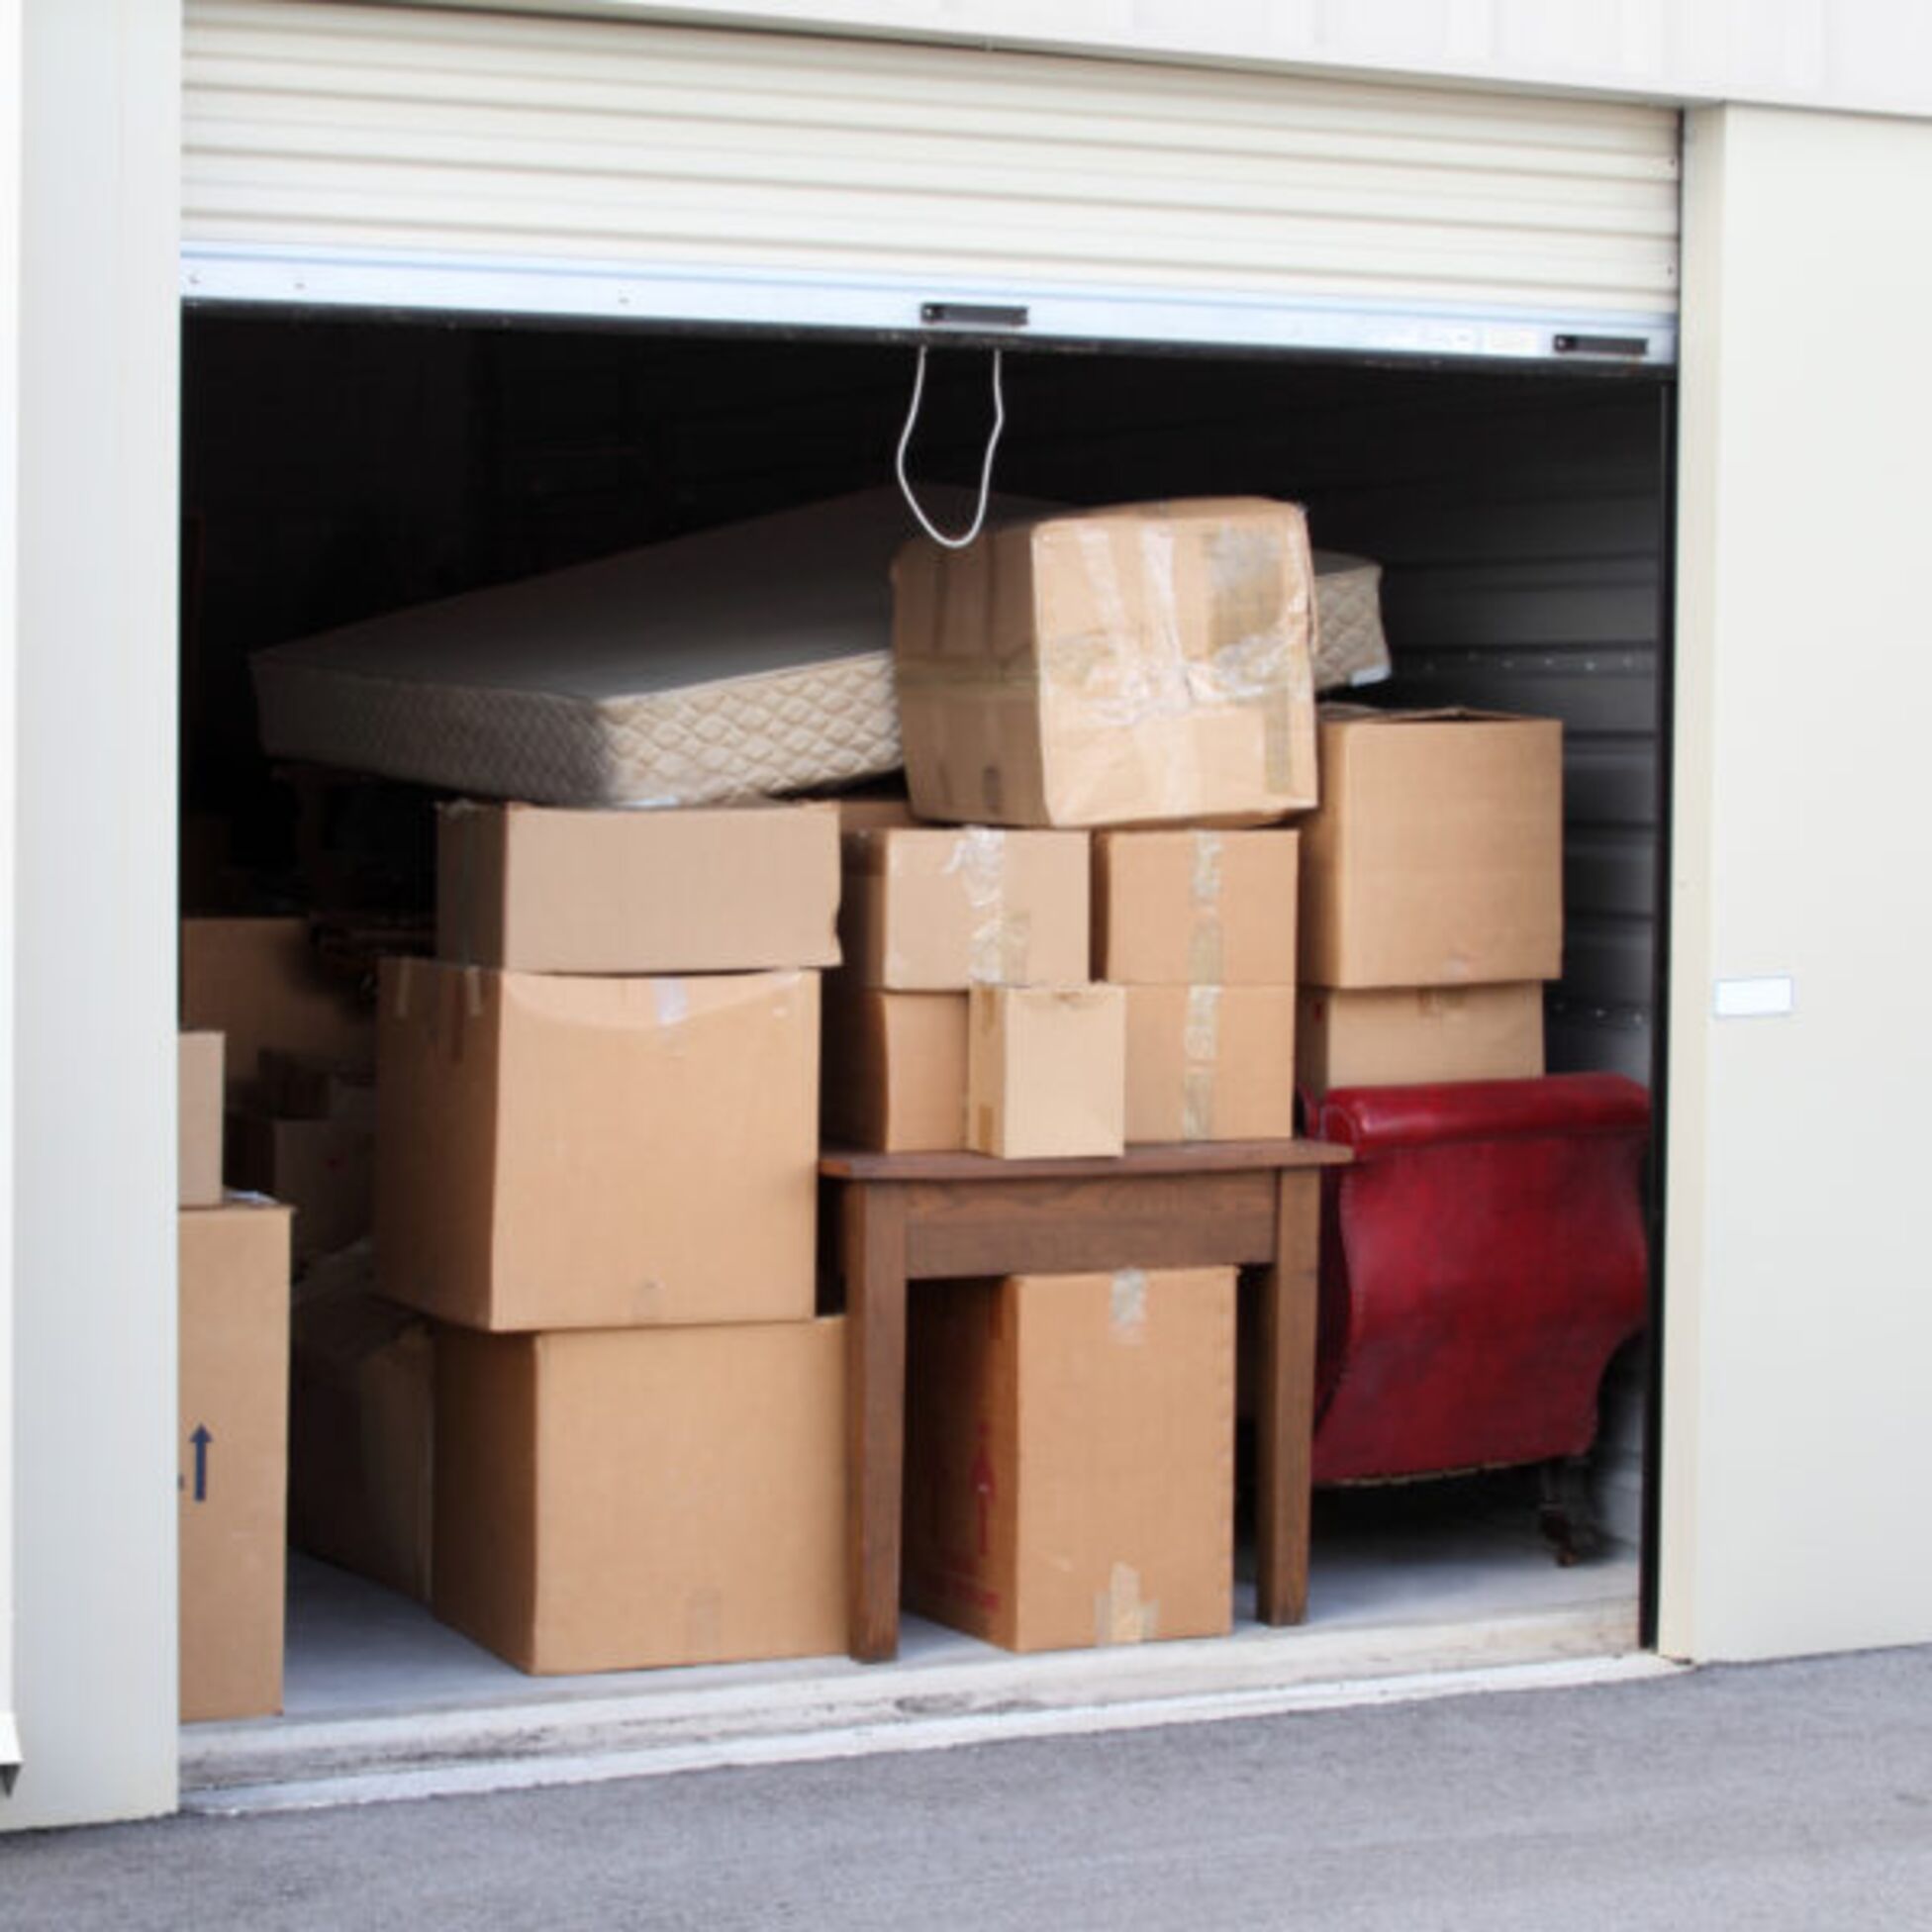 Eingelagerte Möbel und Kartons stehen in einem Selfstorage-Abteil